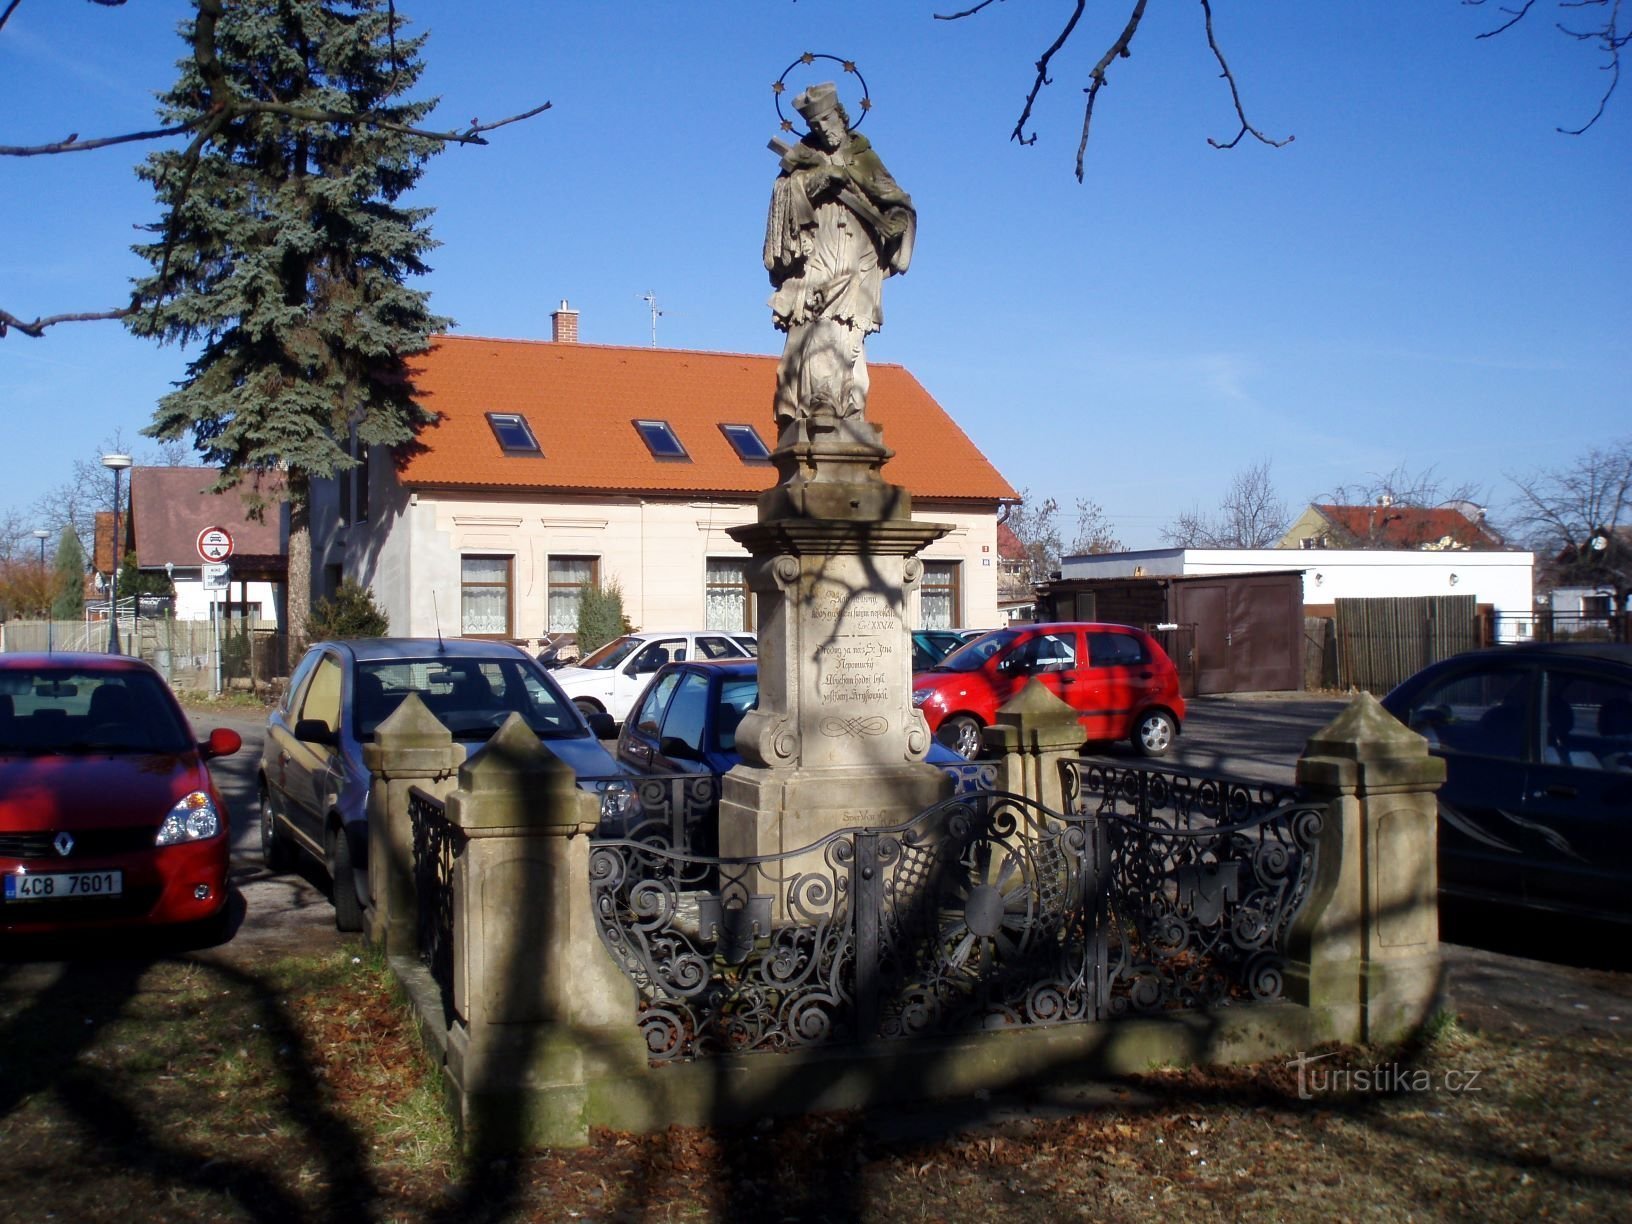 Staty av St. Johannes av Nepomuck i Pouchov (Hradec Králové, 24.3.2011-XNUMX-XNUMX)